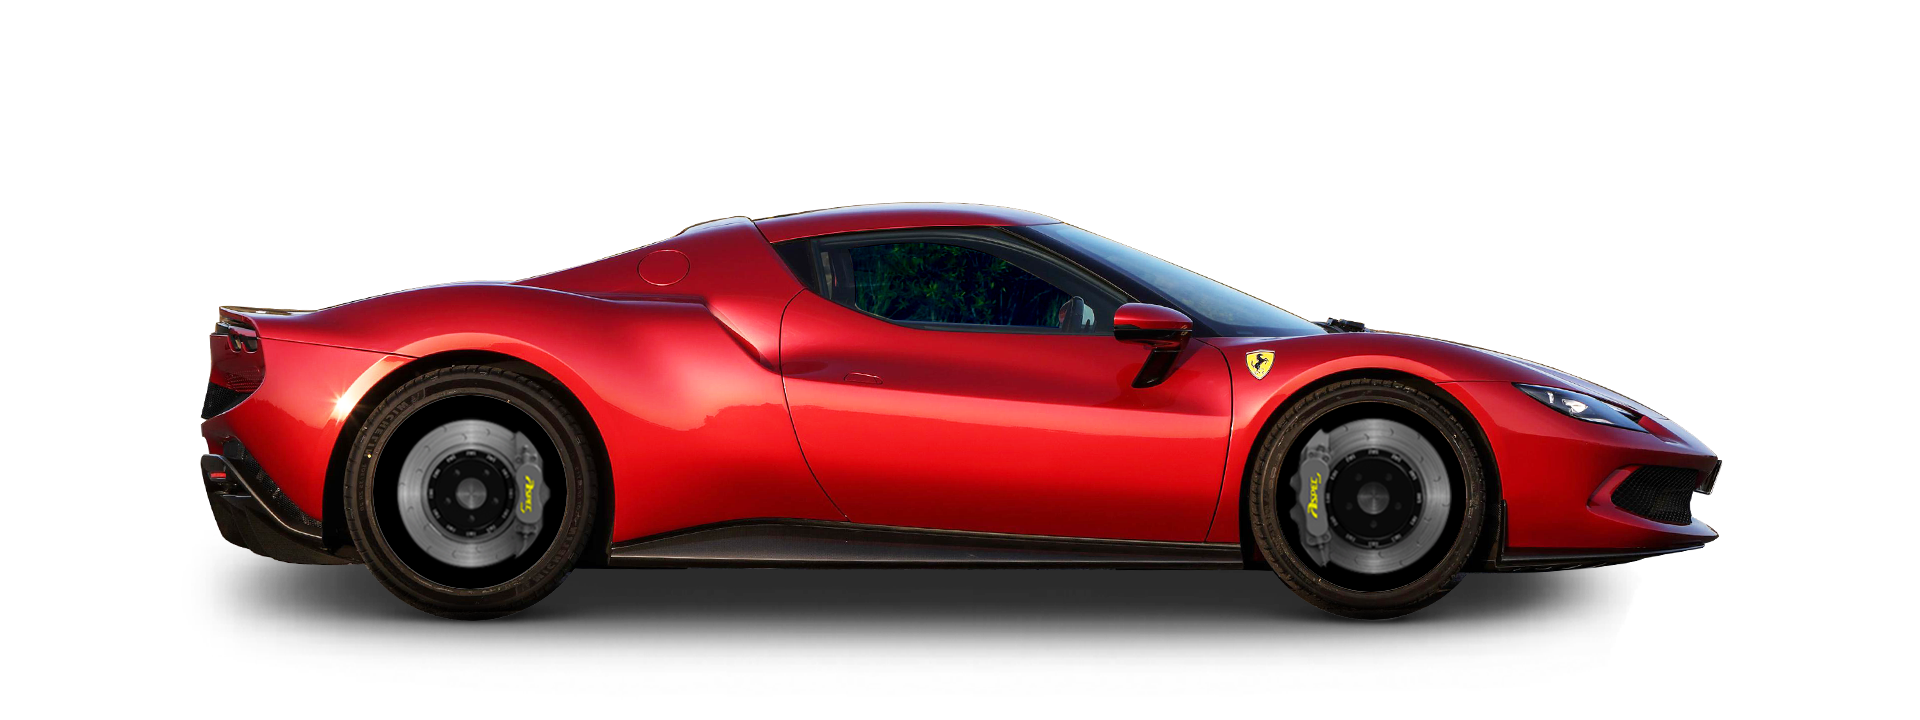  法拉利 Ferrari 296 MF59